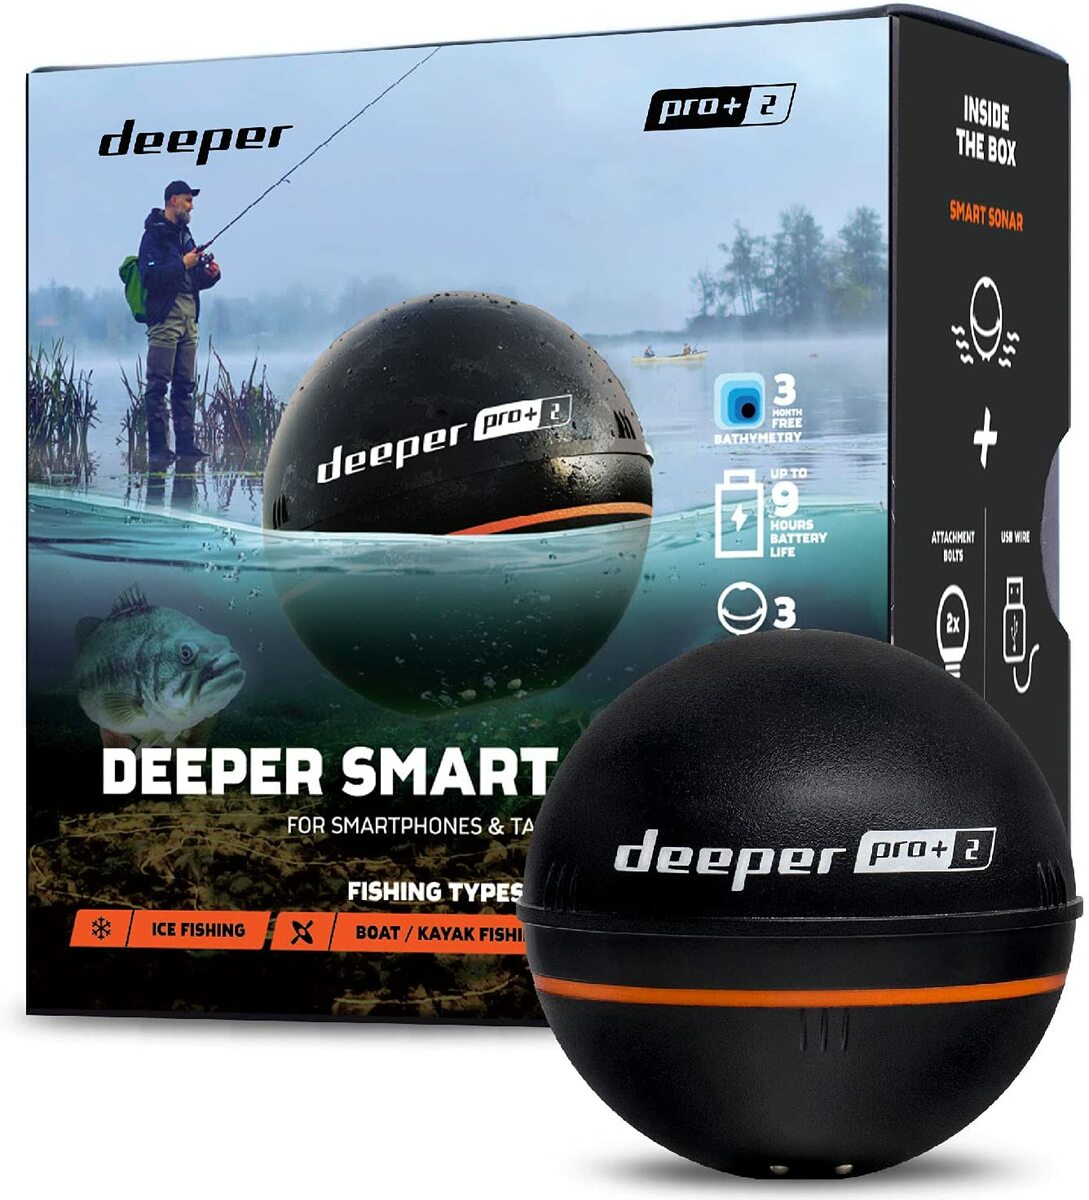 Deeper PRO+ 2　ワイヤレススマート魚群探知機